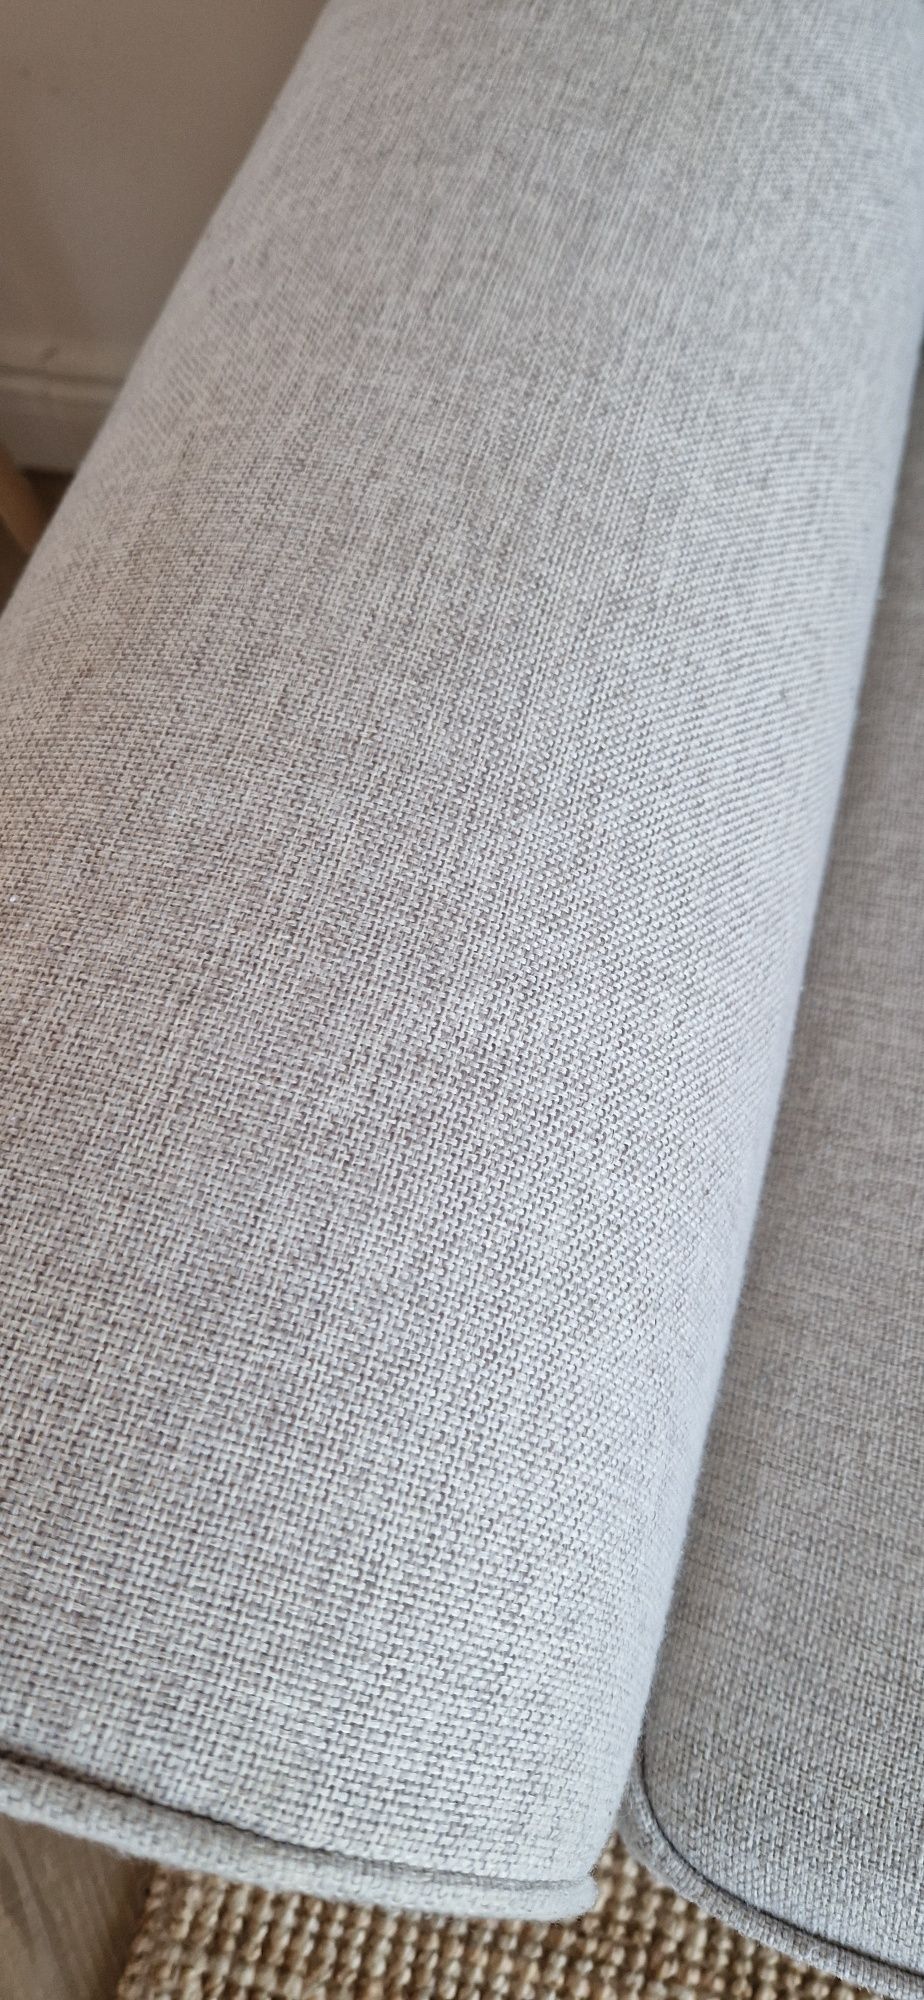 Evertsberg sofa narożna rozkładana  z pojemnikiem narożnik ikea kremow